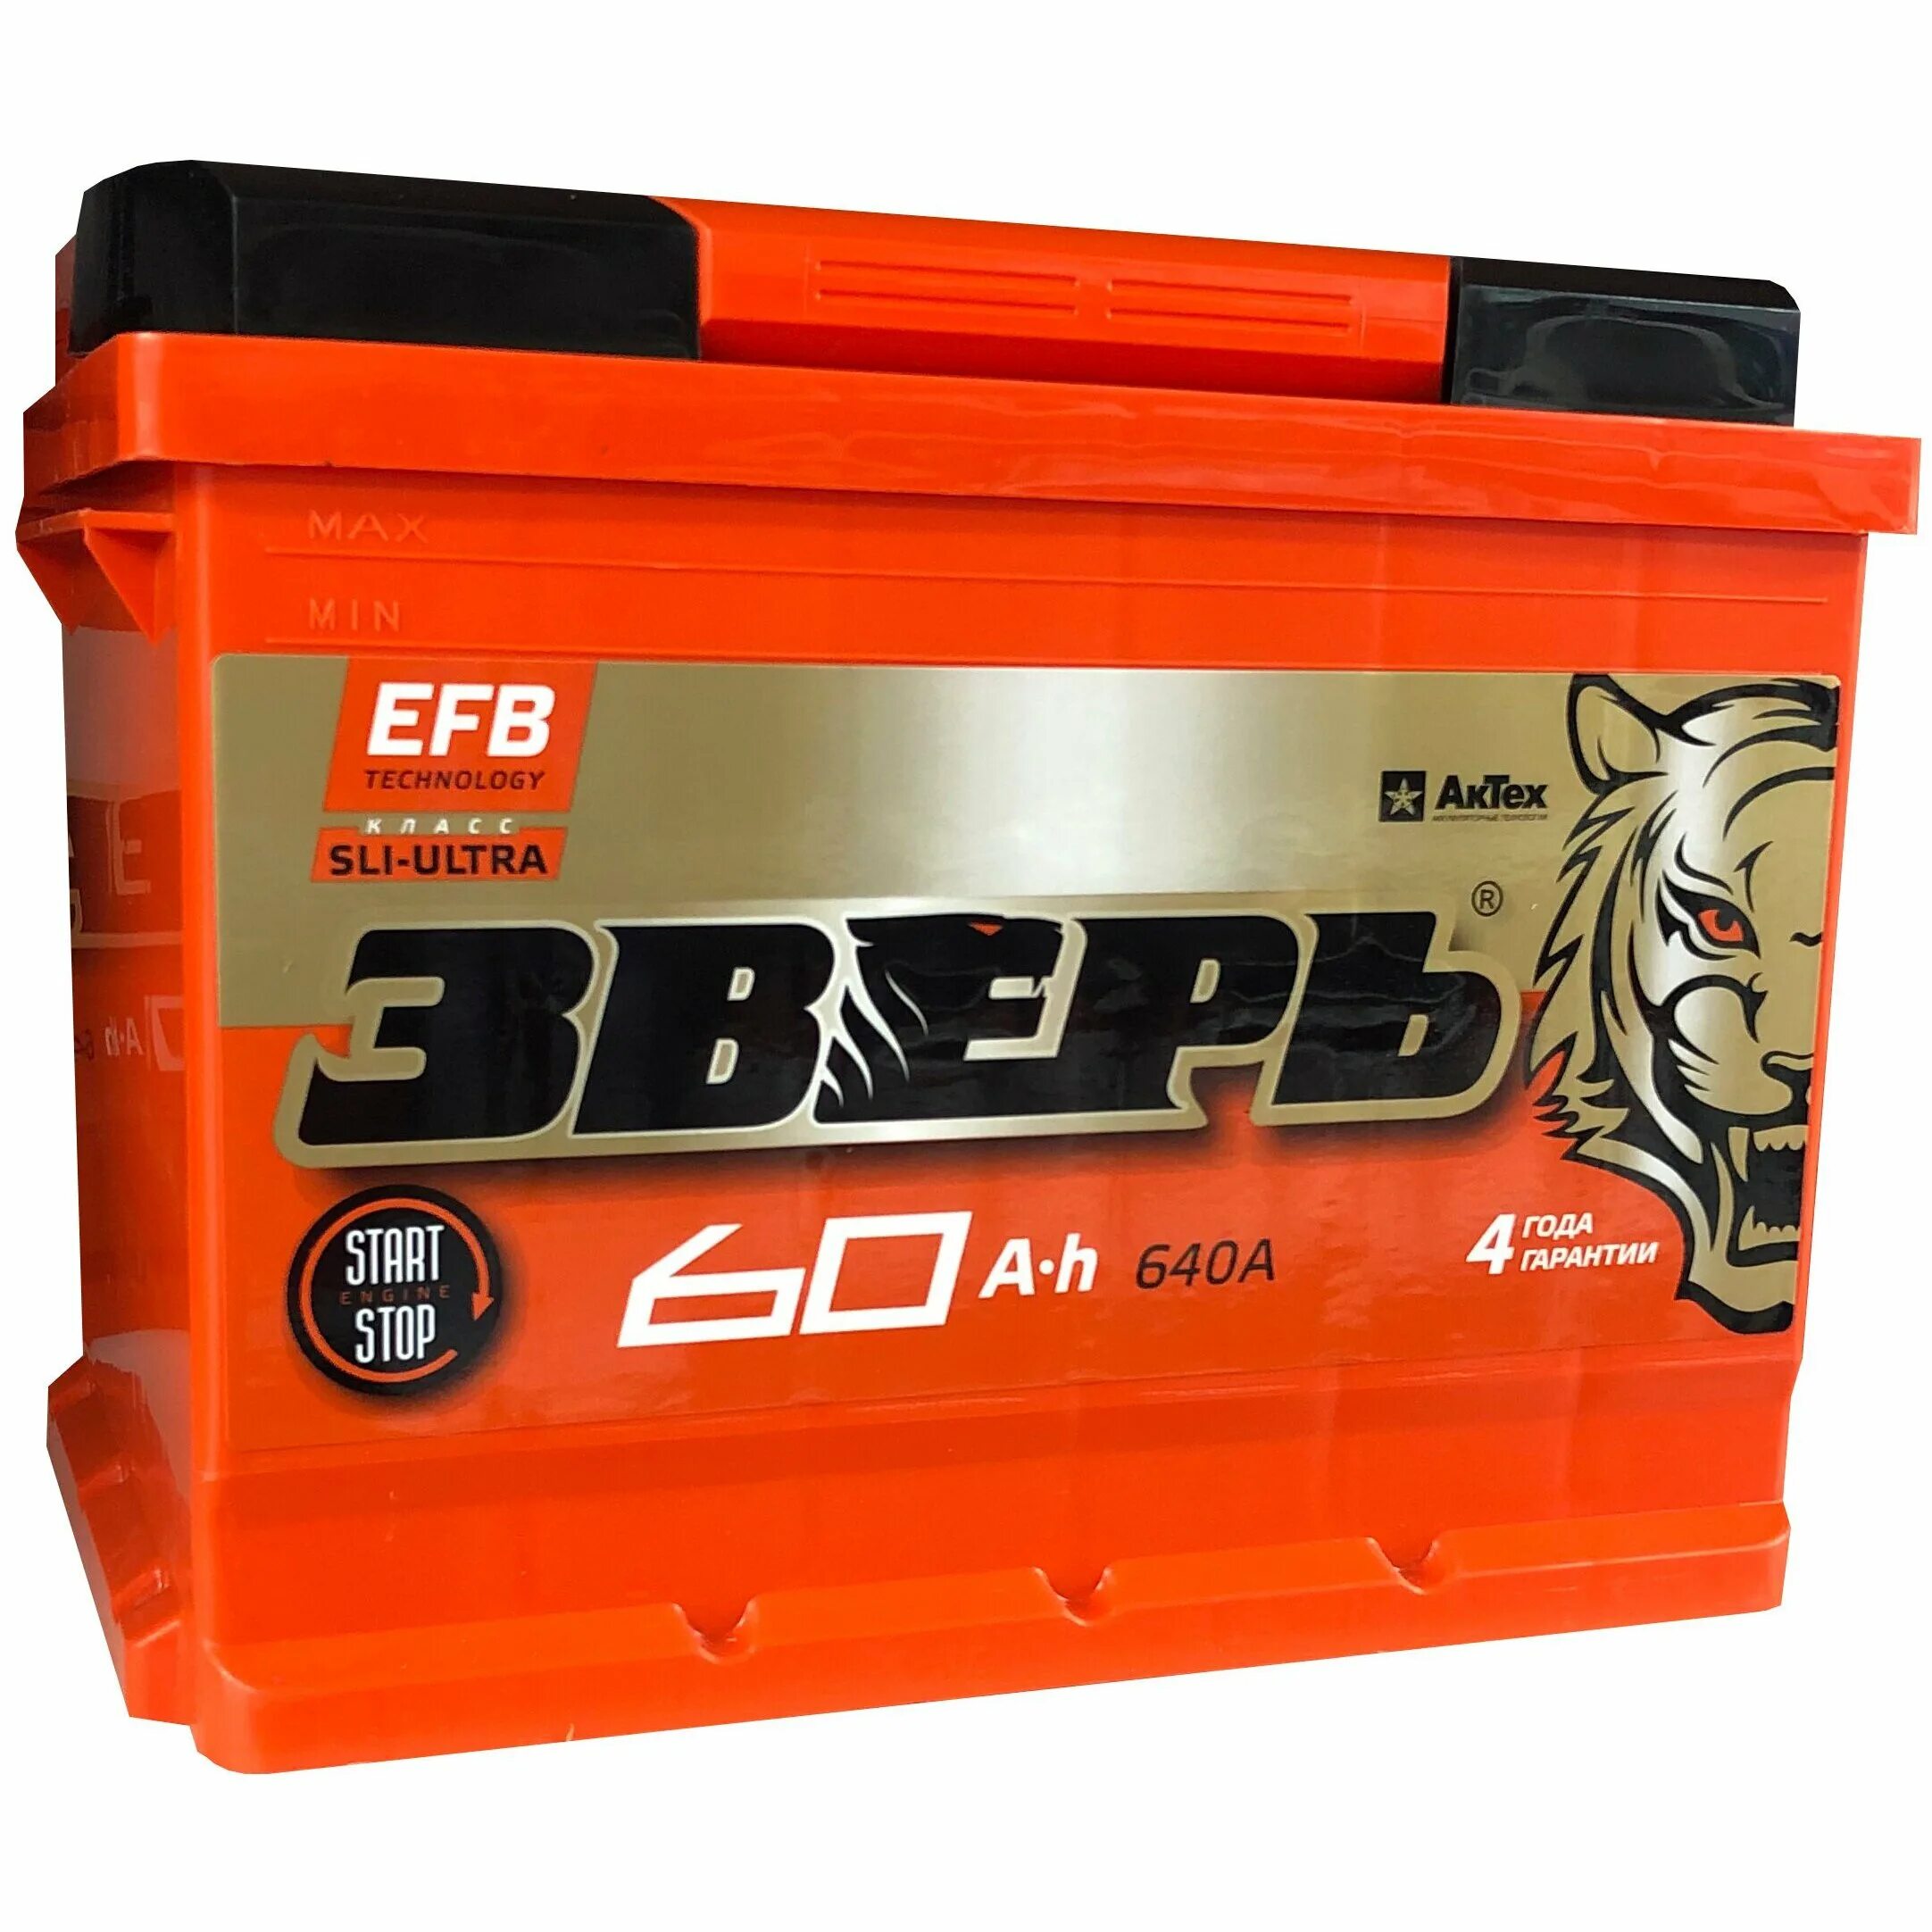 Efb аккумуляторы купить. Аккумулятор зверь ZVEFB 65-3-R EFB. Аккумулятор зверь EFB Asia. Аккумулятор зверь EFB 100 А/Ч. Аккумулятор зверь EFB Азия 80 Ач (d23l) (0).